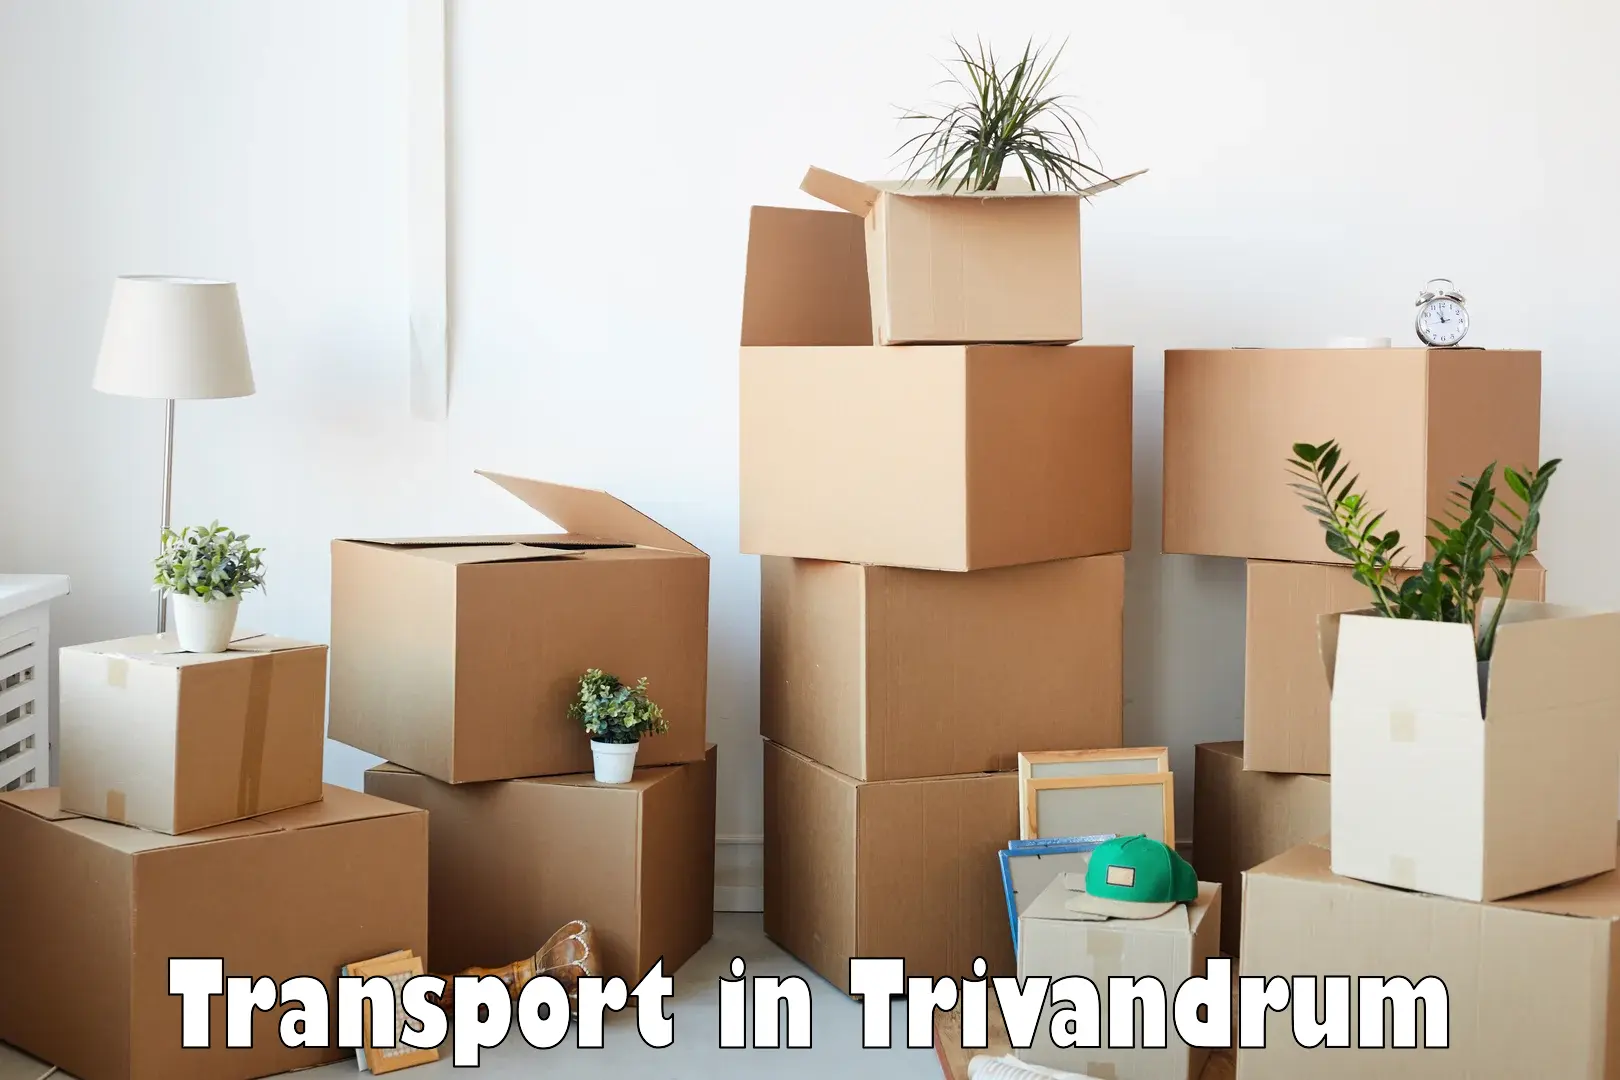 Furniture transport service in Trivandrum